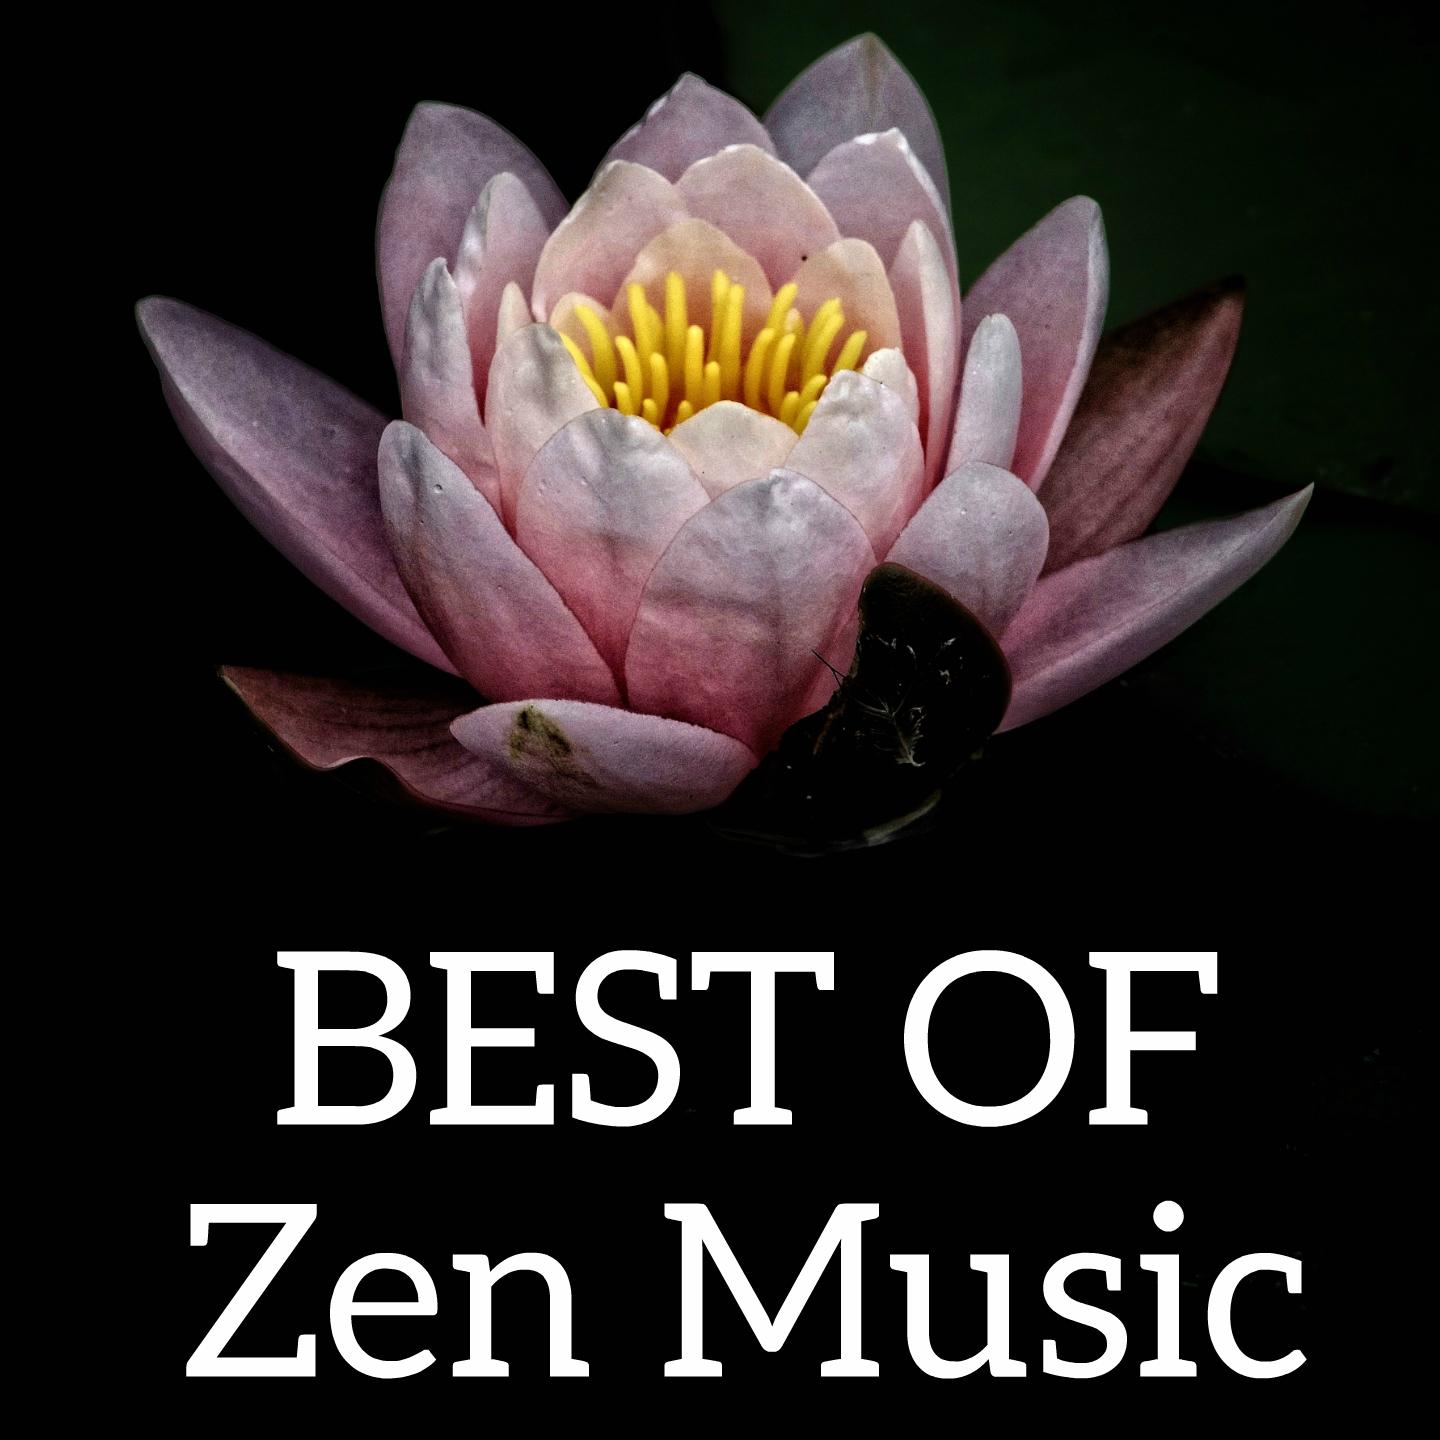 Best of Zen Music